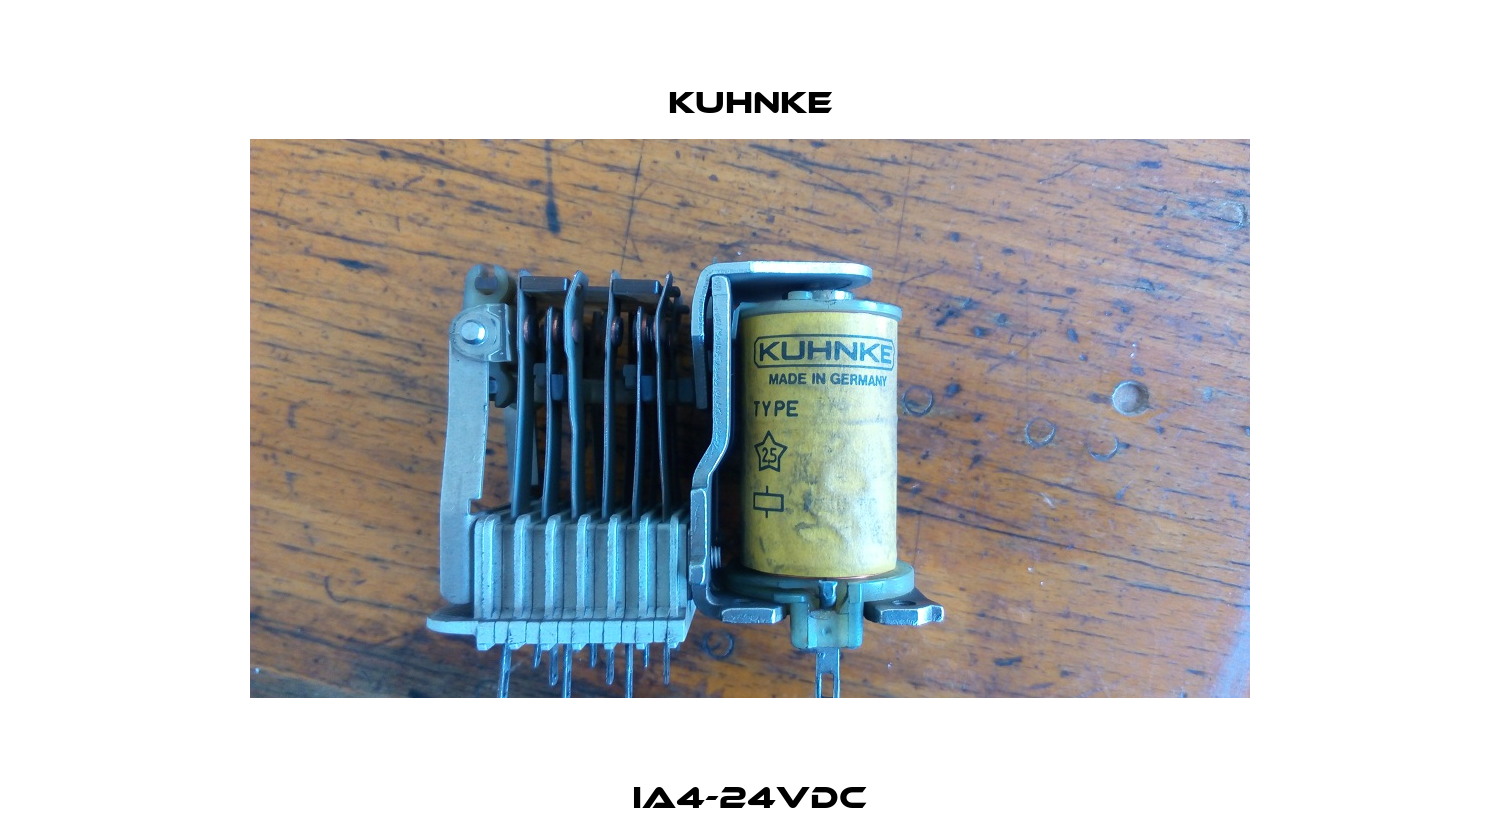 IA4-24VDC Kuhnke